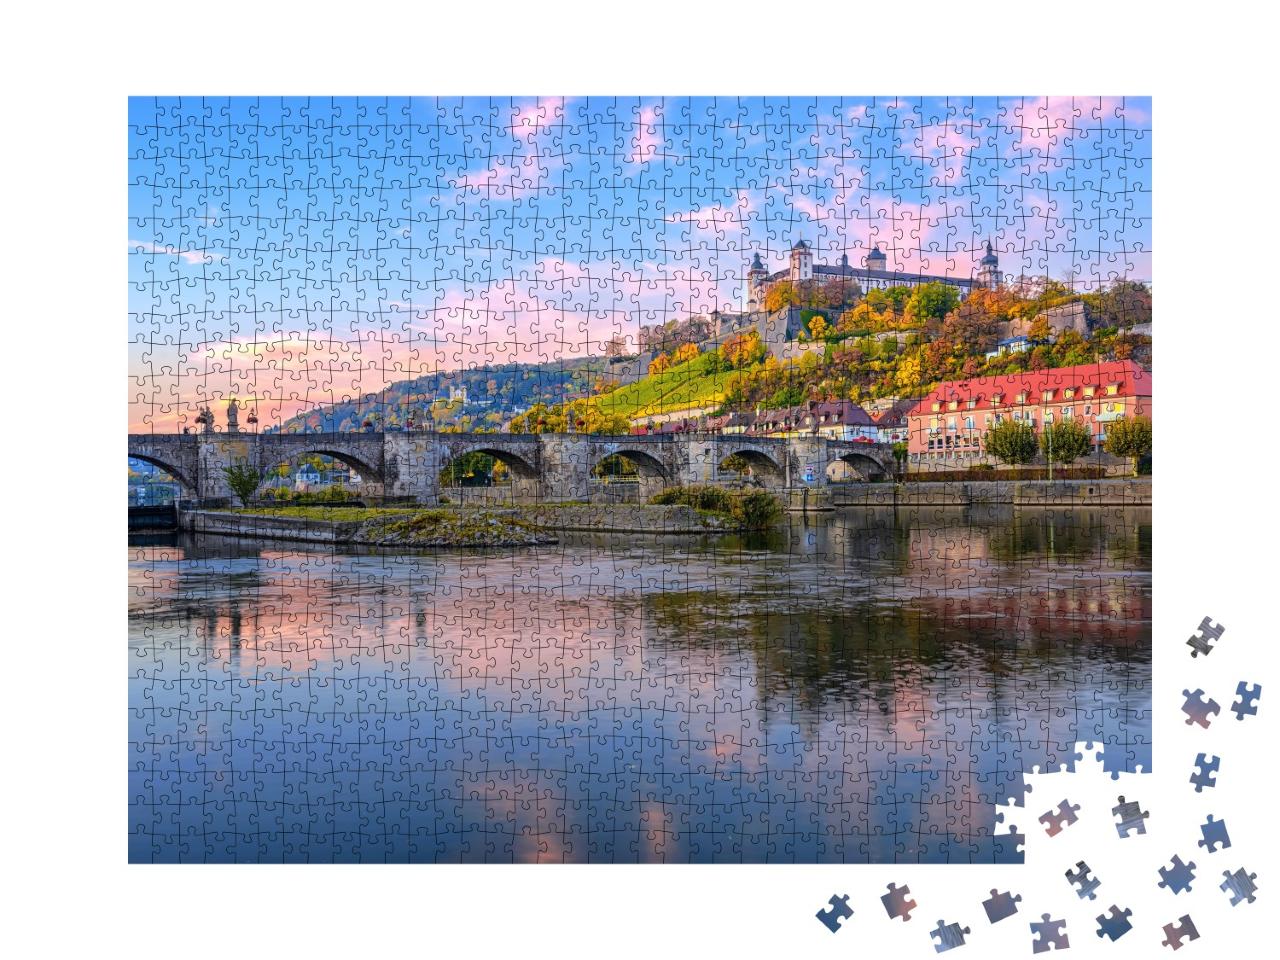 Puzzle de 1000 pièces « La forteresse Marienberg et le vieux pont sur le Main de Würzburg, Allemagne »